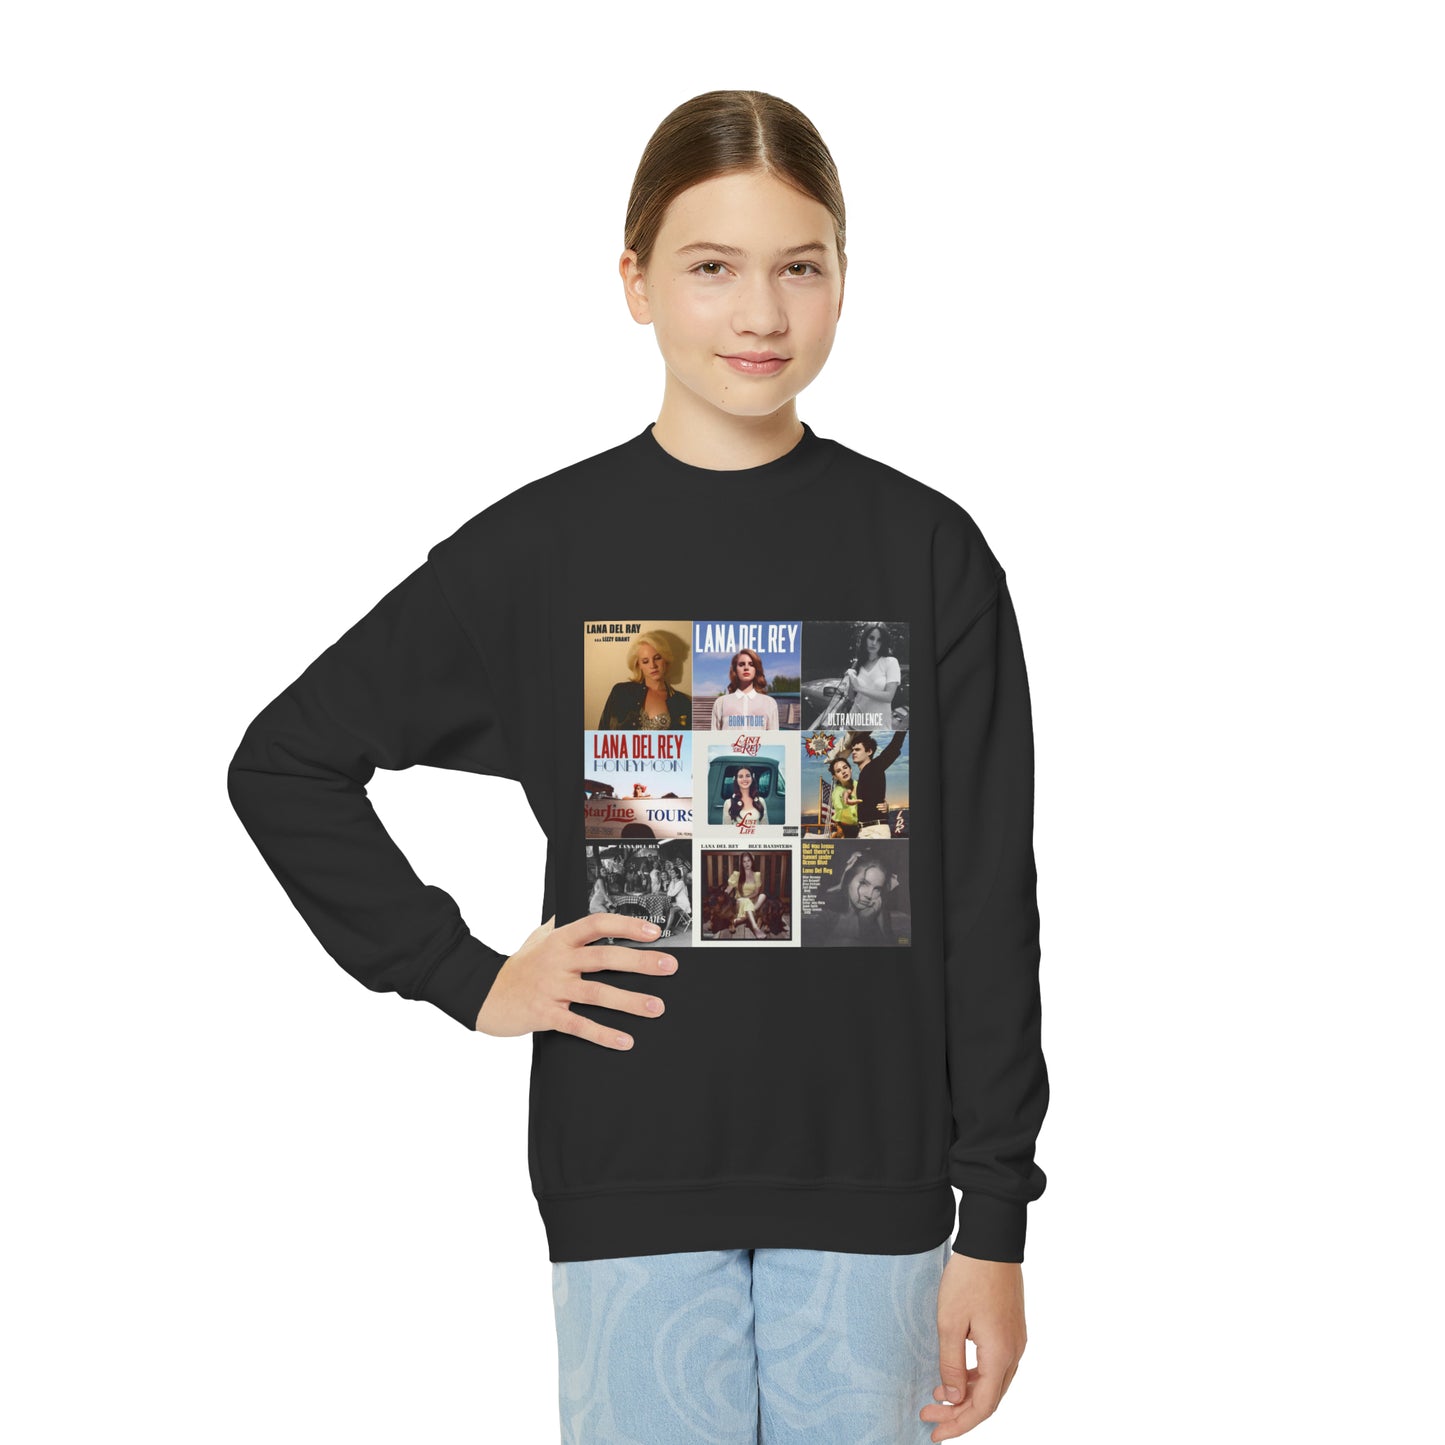 Lana Del Rey Album Cover Collage Youth Crewneck Sweatshirt